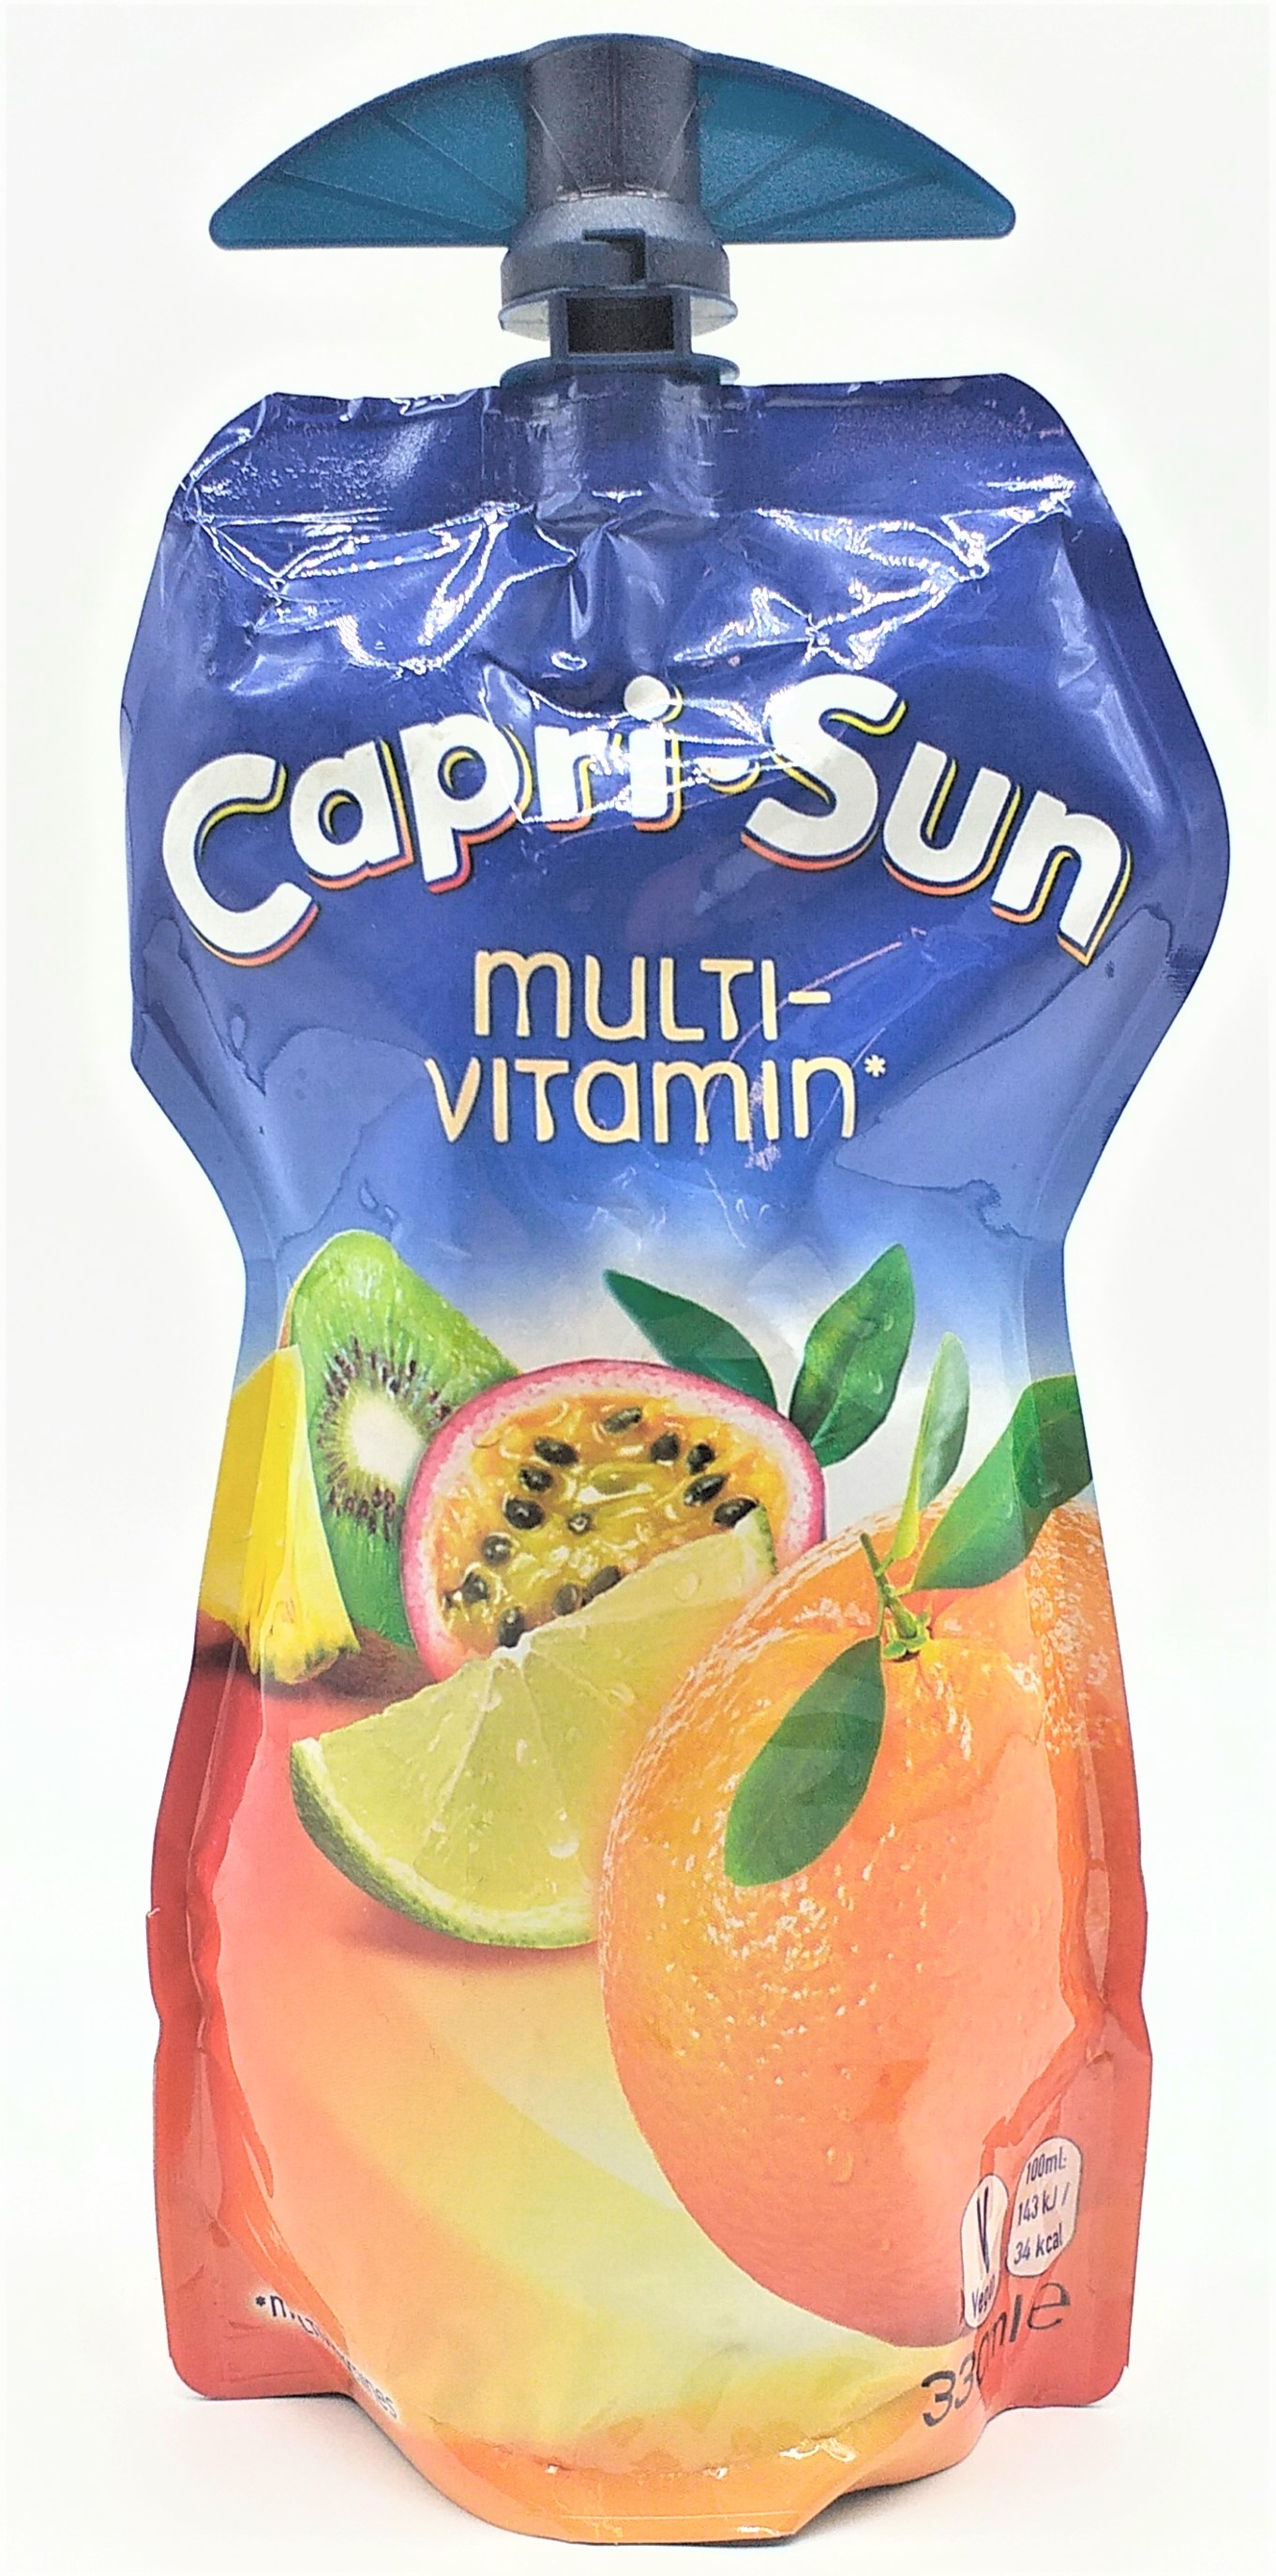 Capri-Sun Multivitamin 0,33l